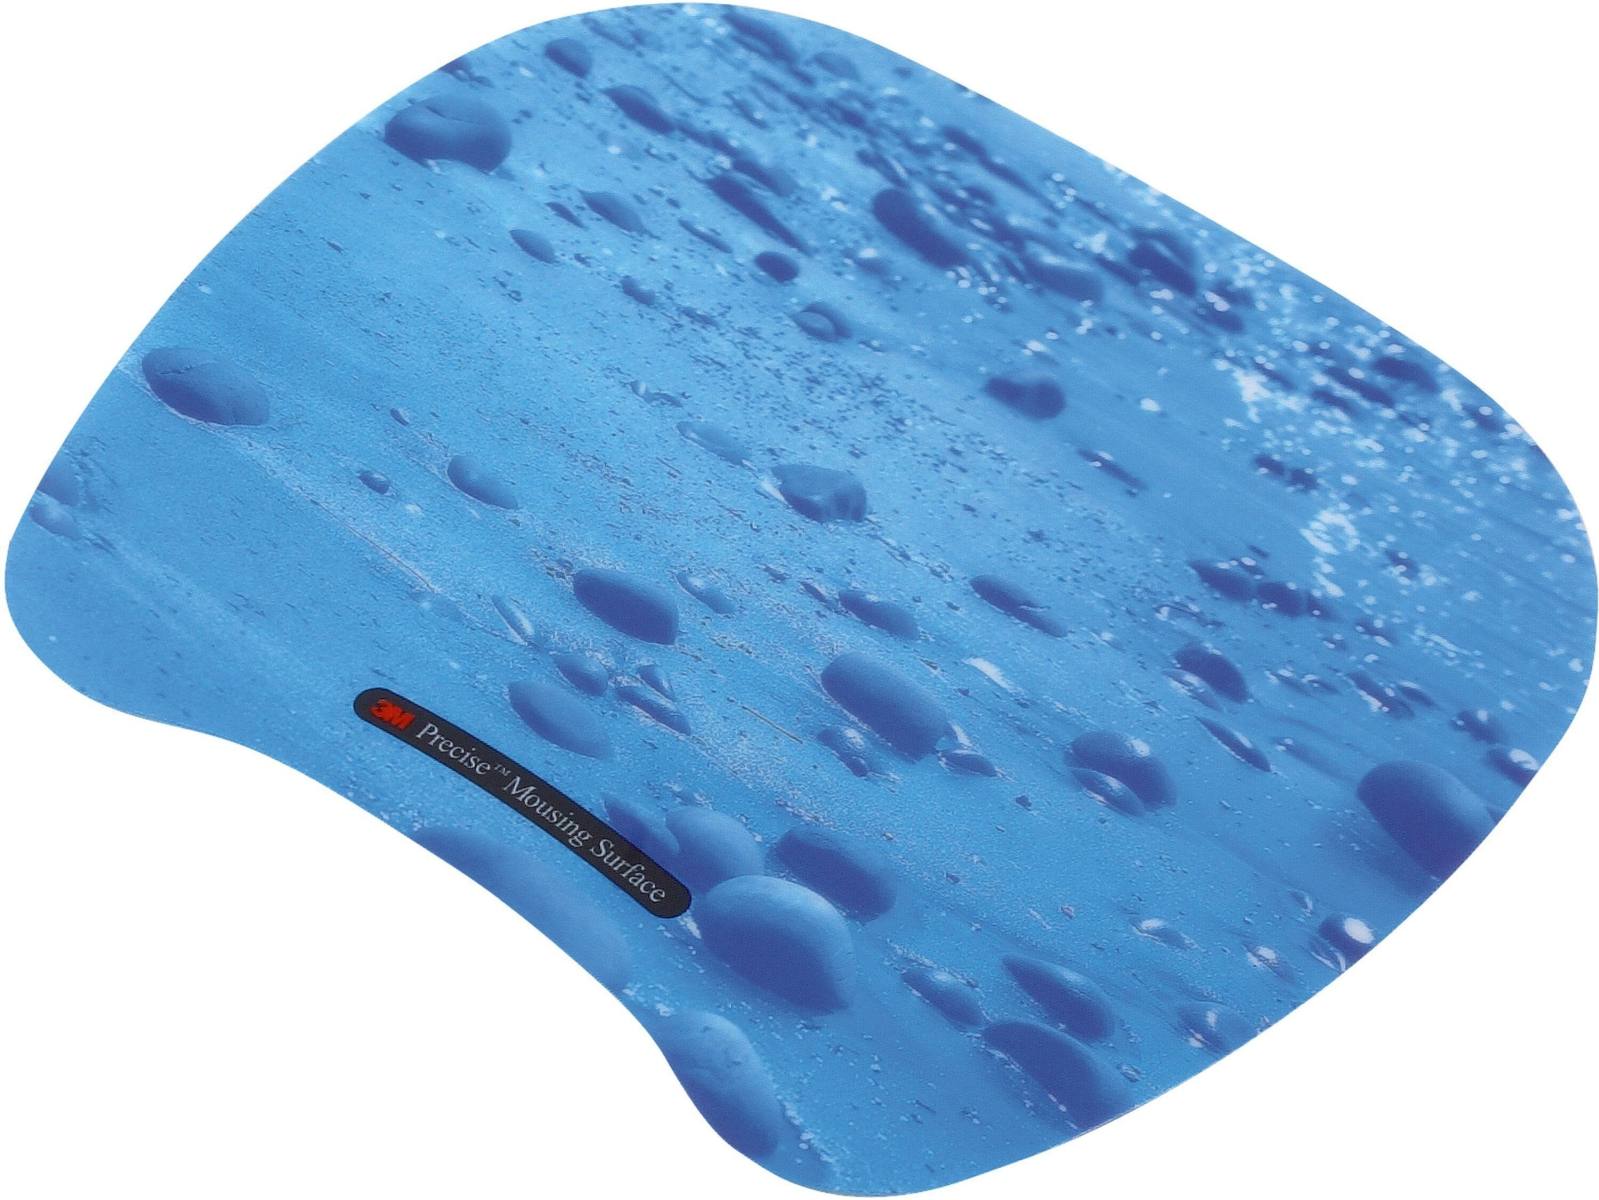 3M Präzisions-Mousepad MS201PB, 22,7 cm x 18,4 cm, blau, 1 Stück